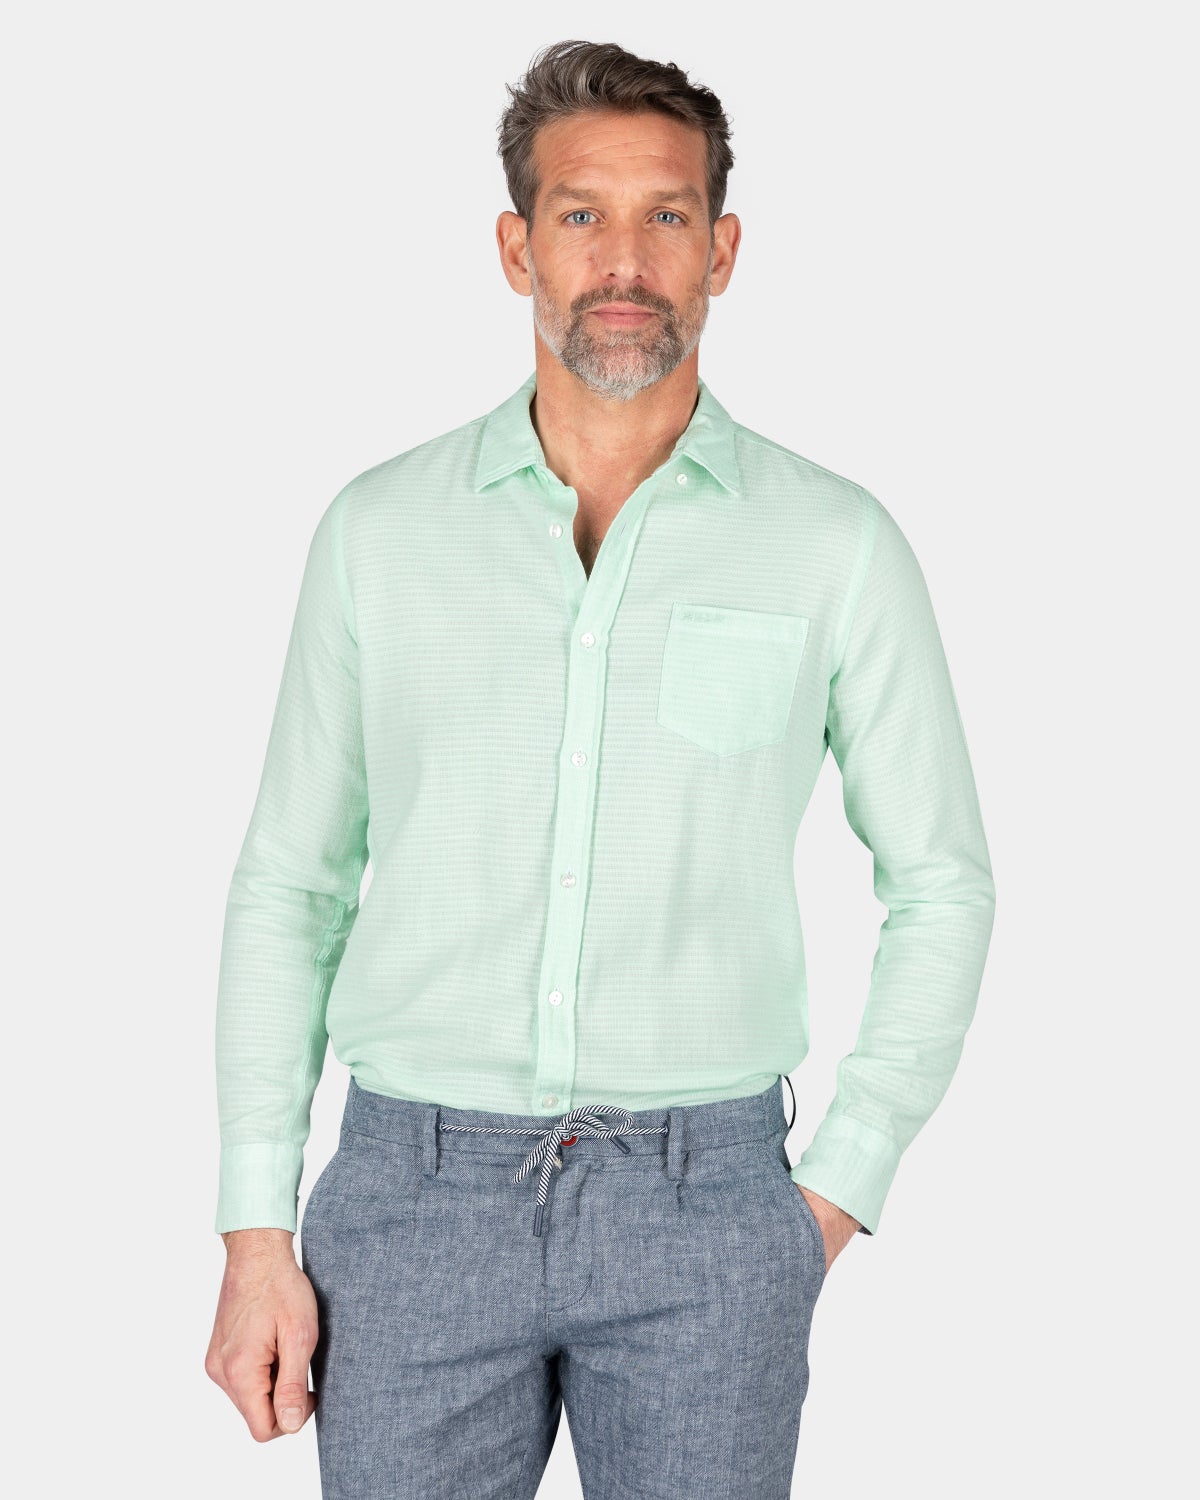 Cotton shirt - Teal Green